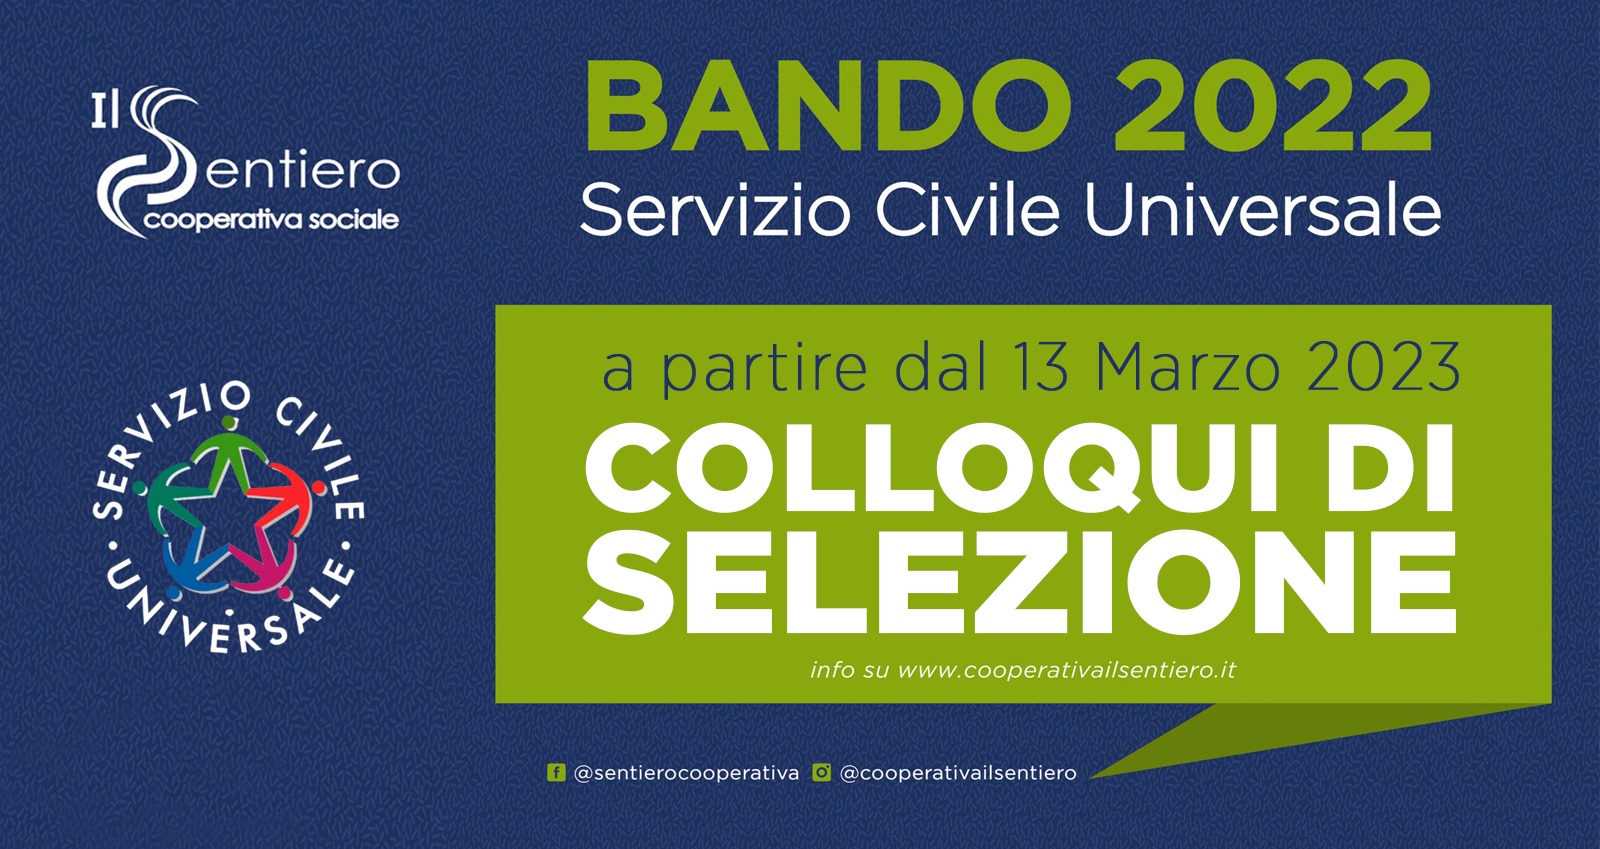 Palomonte in lutto cittadino: selezioni del Servizio Civile spostate ad Oliveto Citra il 13 e 14 marzo